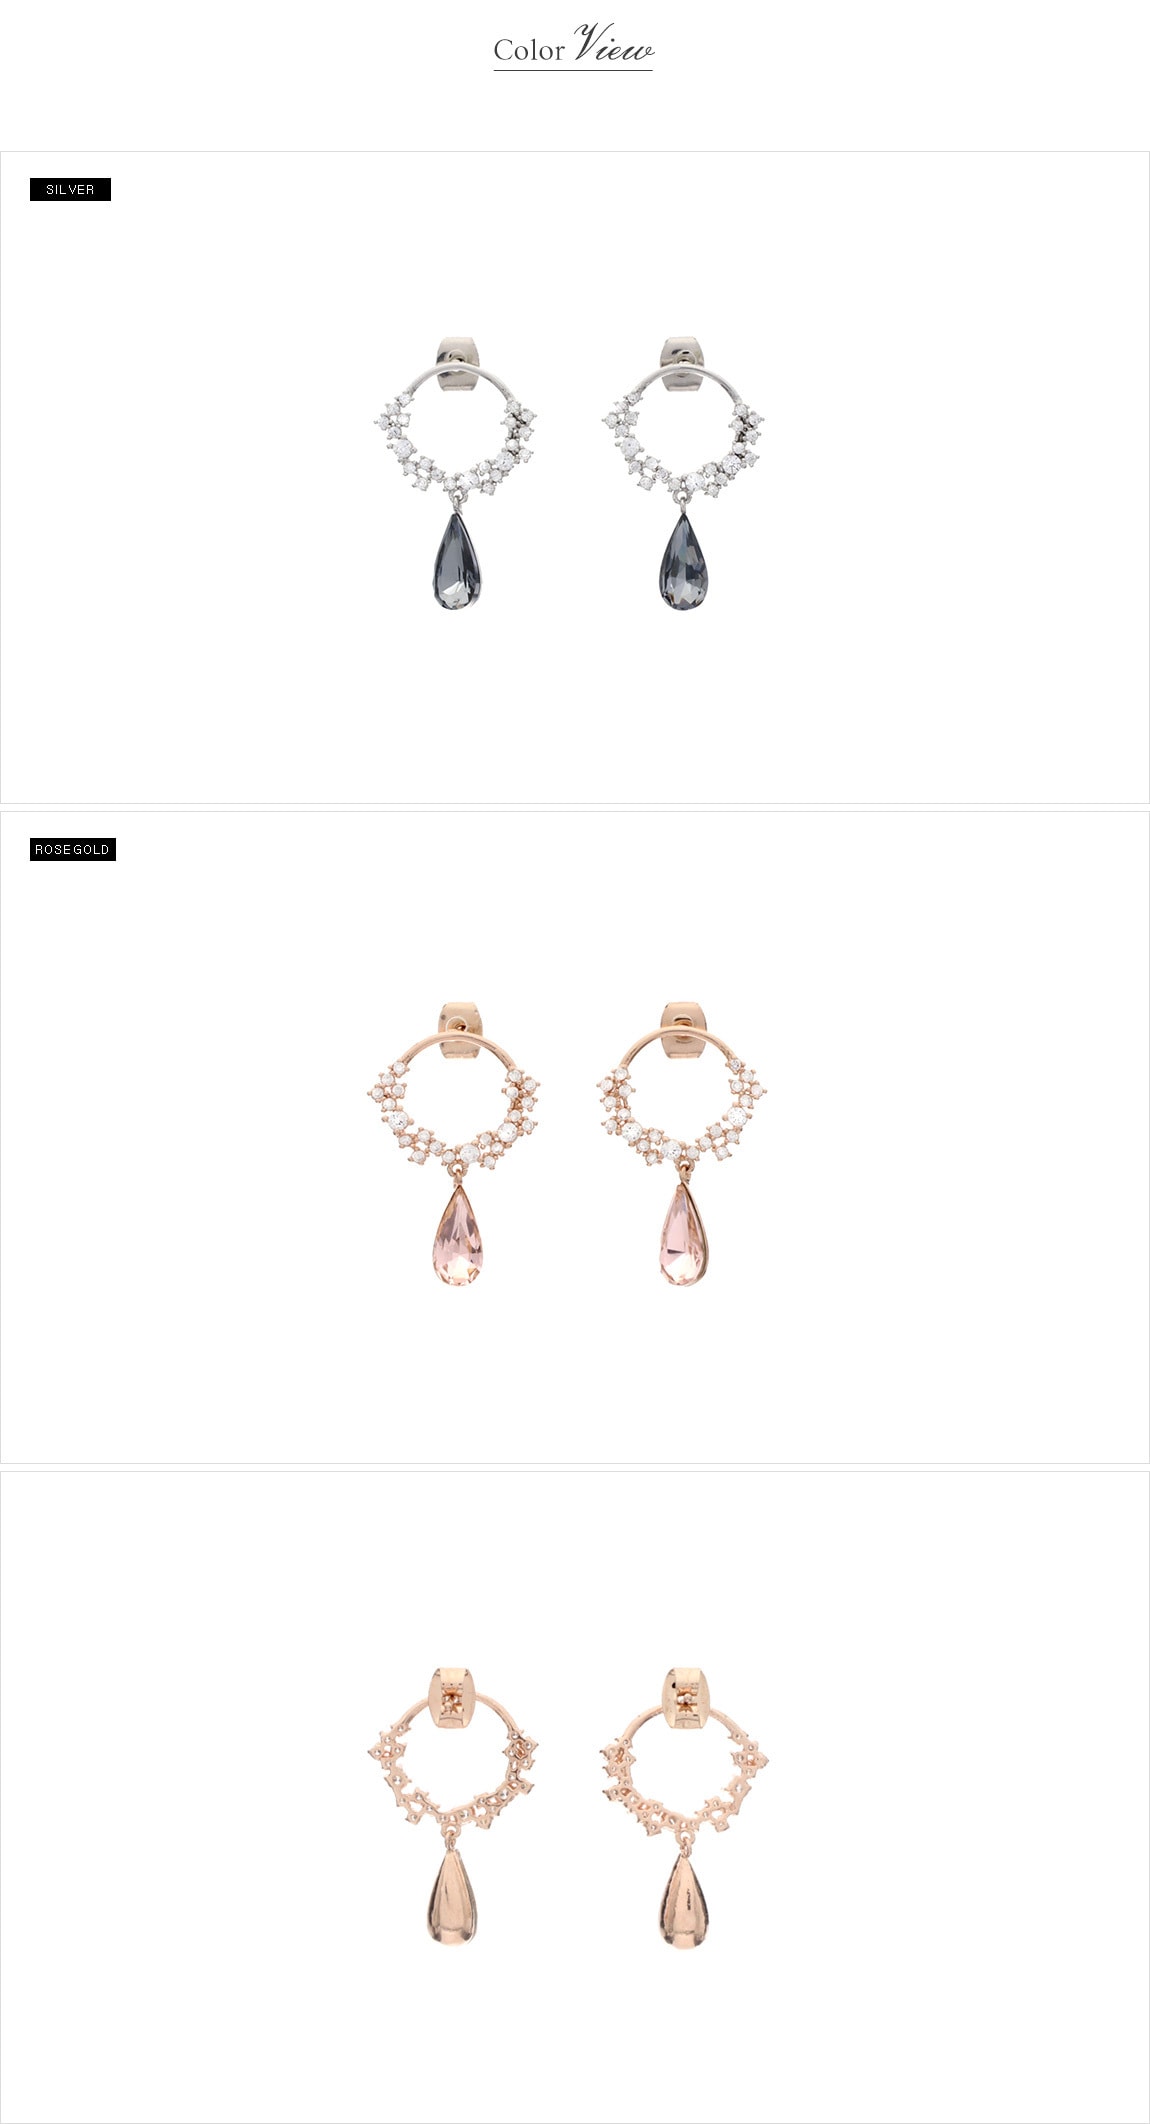 【韩国直邮】ATTRANGS 水滴形状彩色宝石垂挂式耳环 玫瑰金色 均码